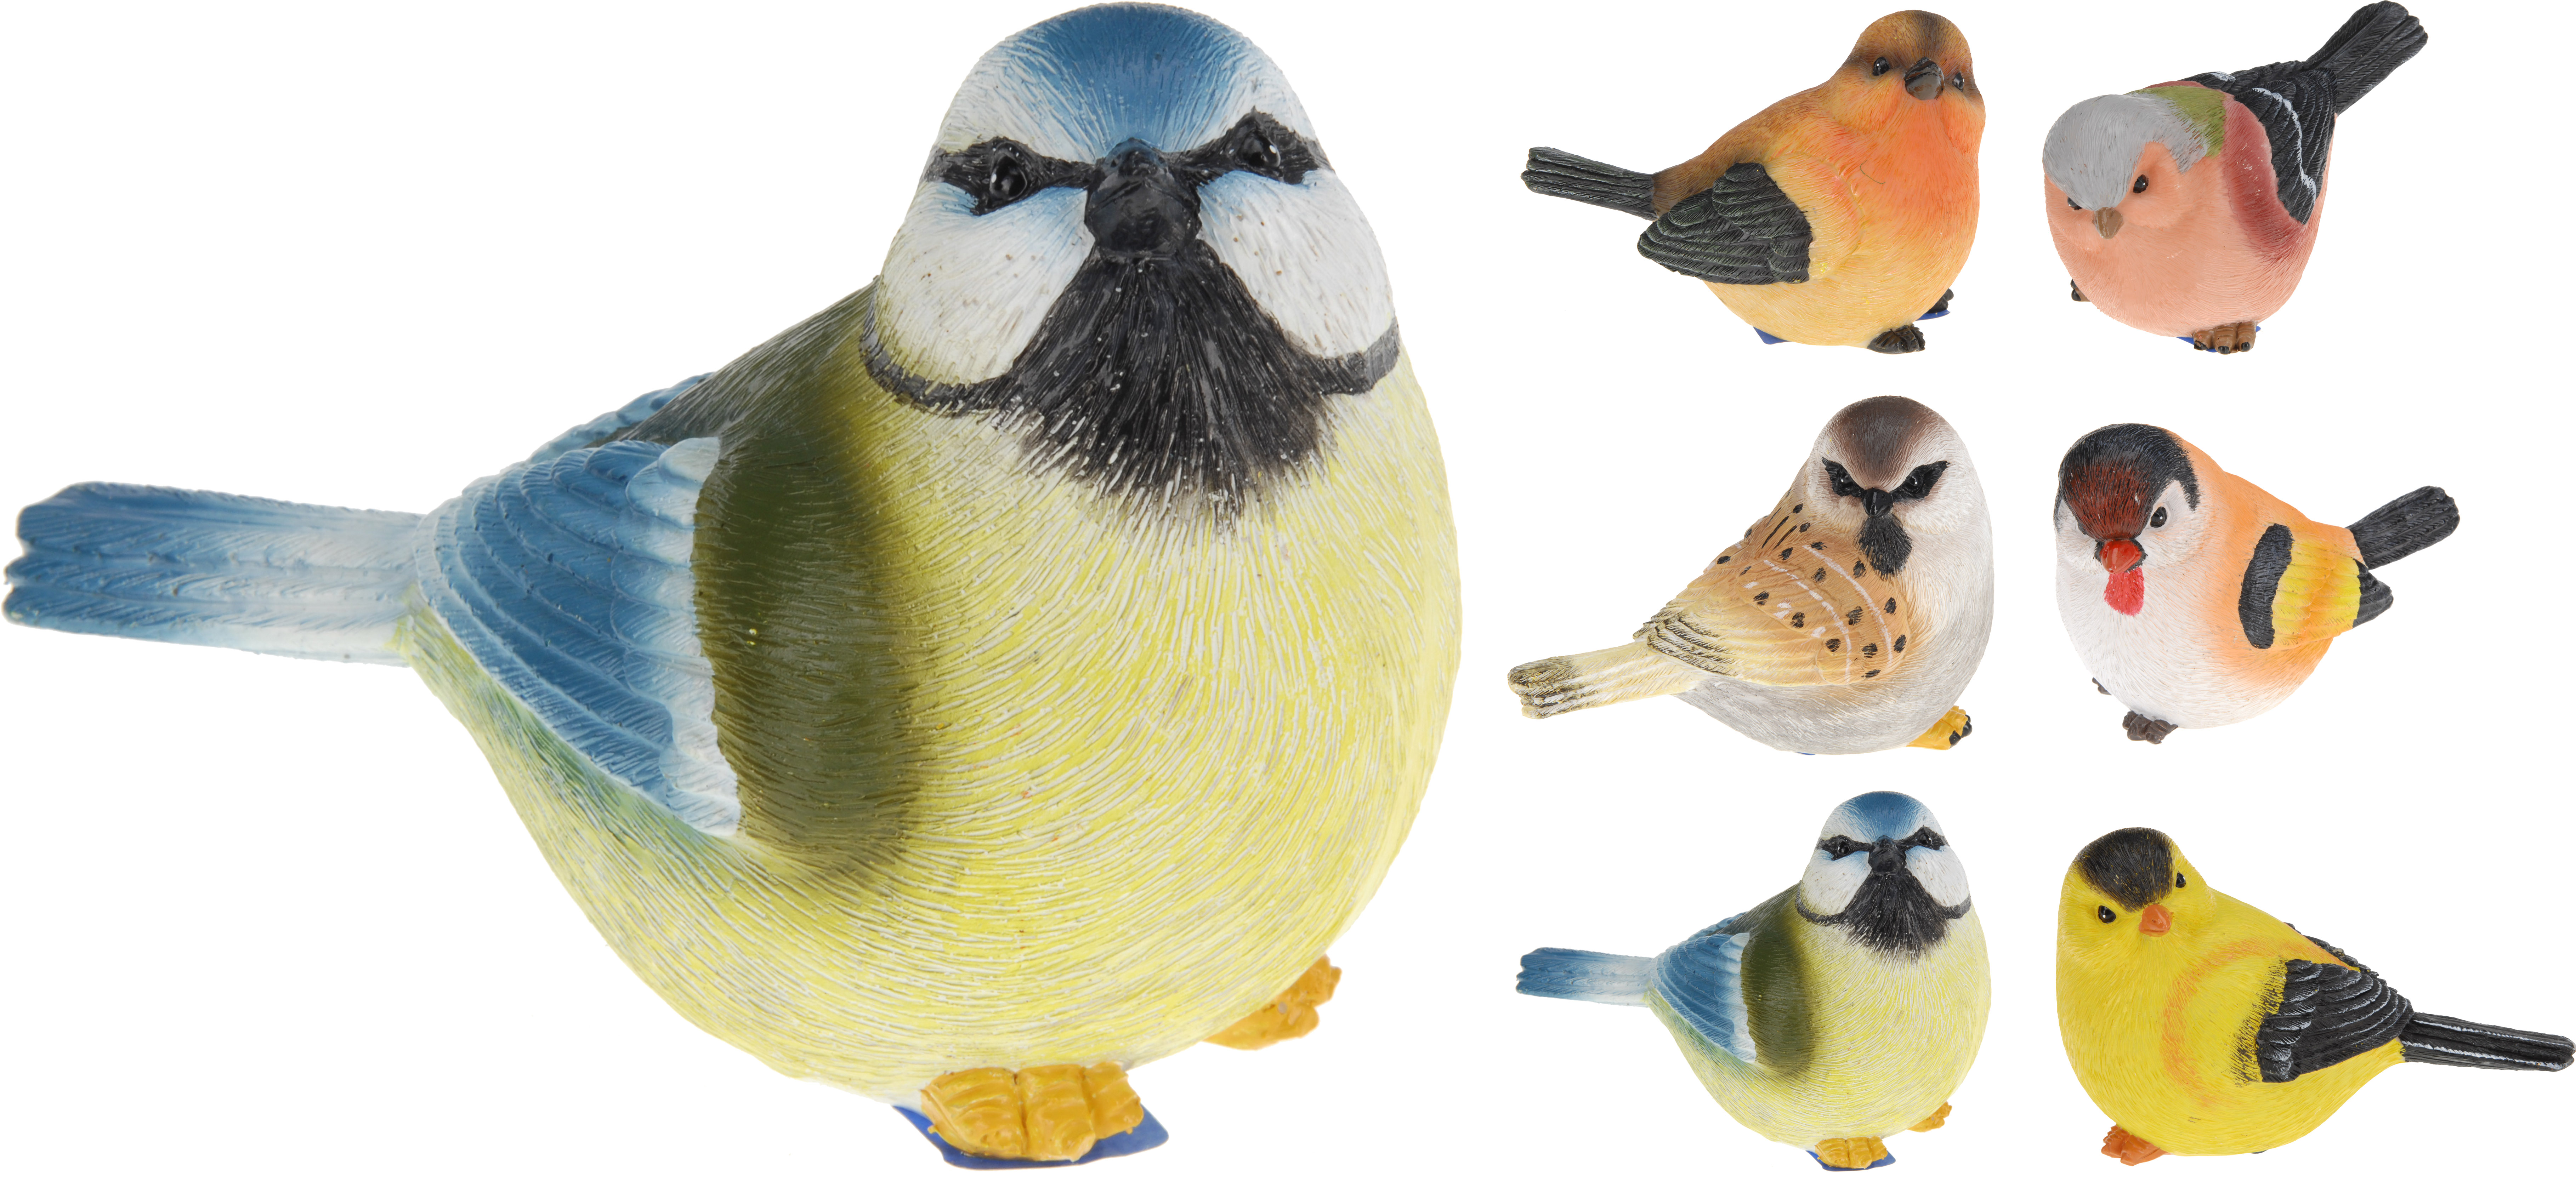 Petits oiseaux artificiel